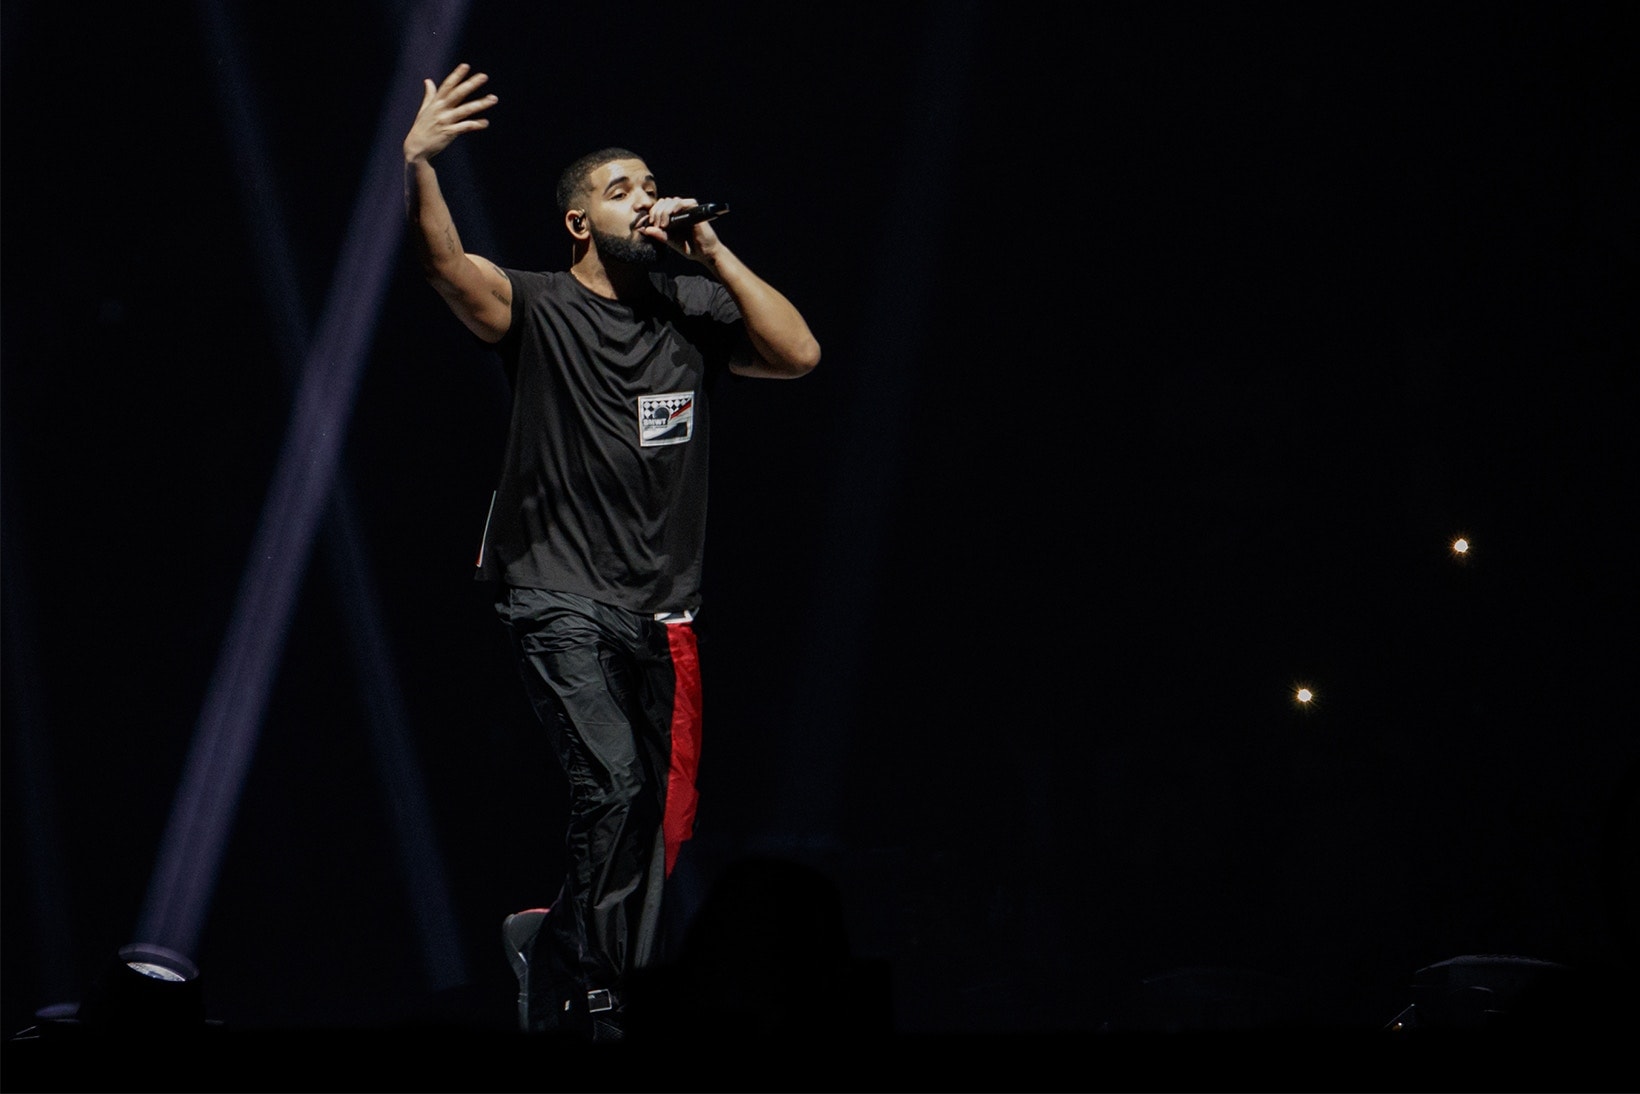 Drake の Boy Meets World Tour オセアニア編は Prada が全衣装を提供 プラダ ドレイク ツアーイタリアの老舗メゾンが完全一点モノのエクスクルーシブ衣装を製作していたという超VIP待遇が判明 Drizzy